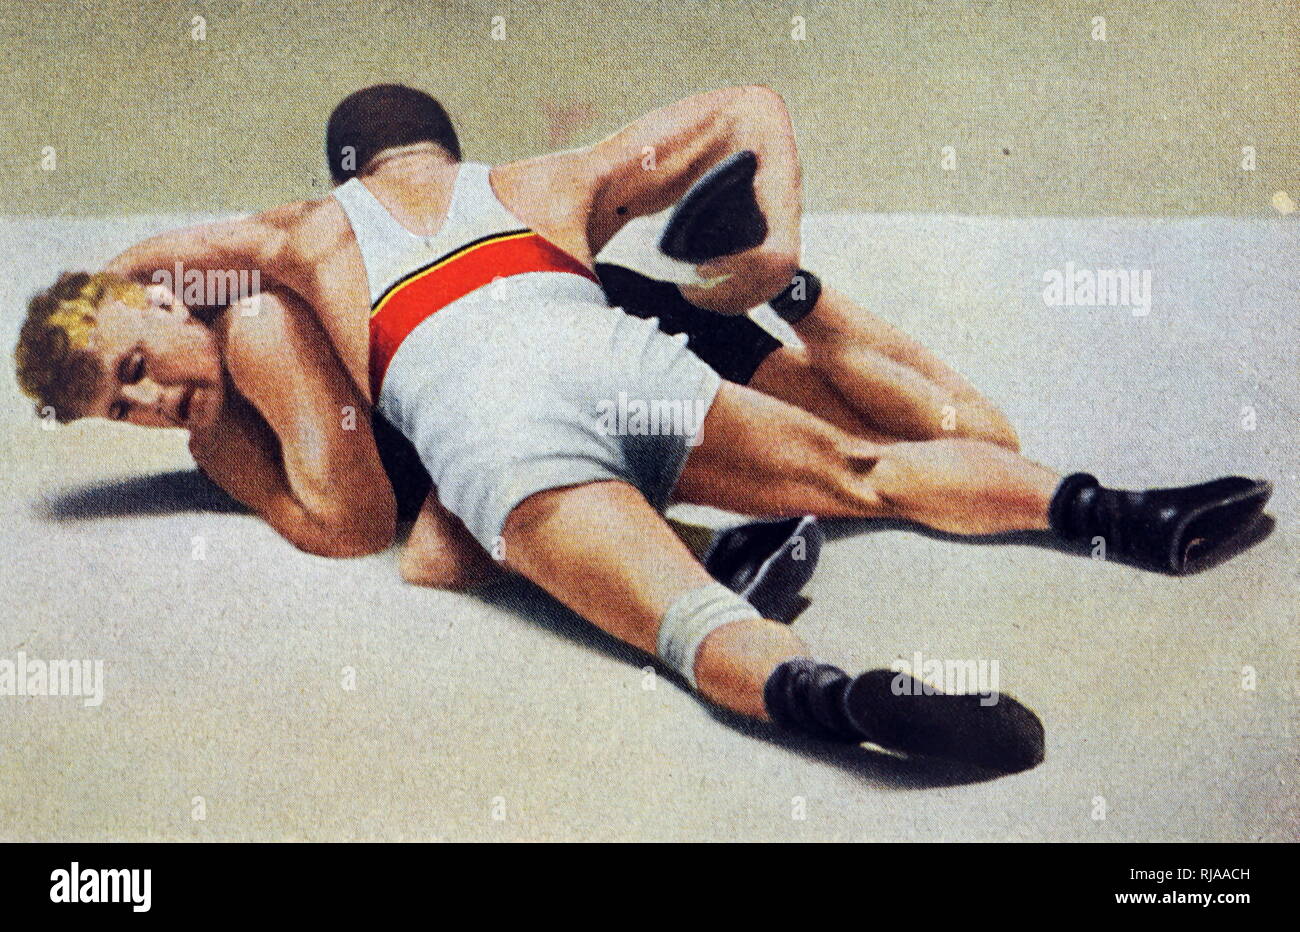 Foto von Jean Földeák & Dane Jensen Ringen bei den Olympischen Spielen 1932. Dieses Spiel wurde von Jean Földeák gewonnen. Er gewann Silber im Mittelgewicht. Stockfoto